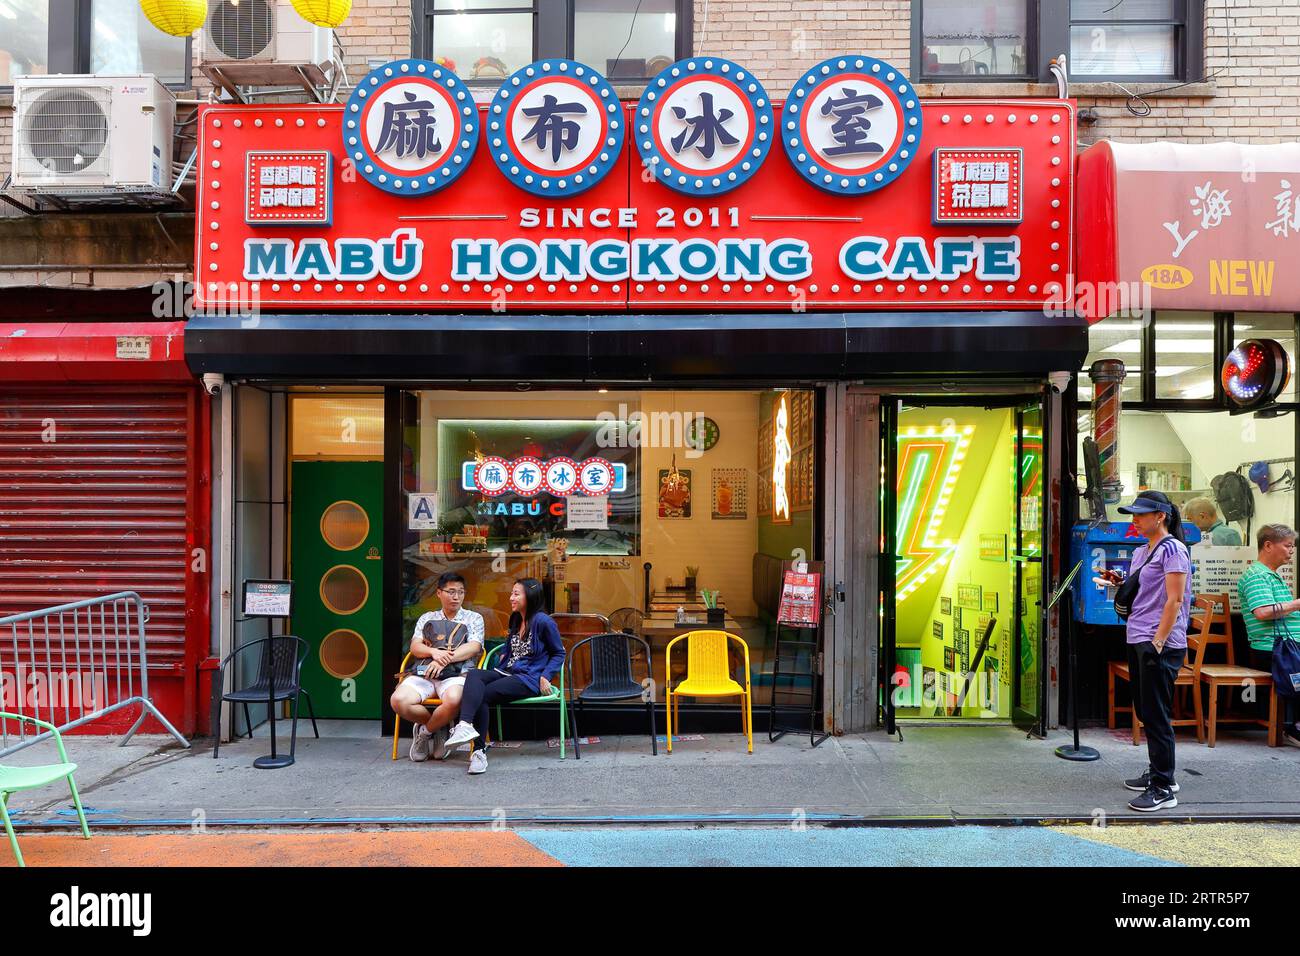 Mabu Cafe 麻布冰室, 18 Doyers St, New York. New Yorker Schaufensterfoto eines Restaurants im Hong Kong-Stil in Manhattan Chinatown. Stockfoto